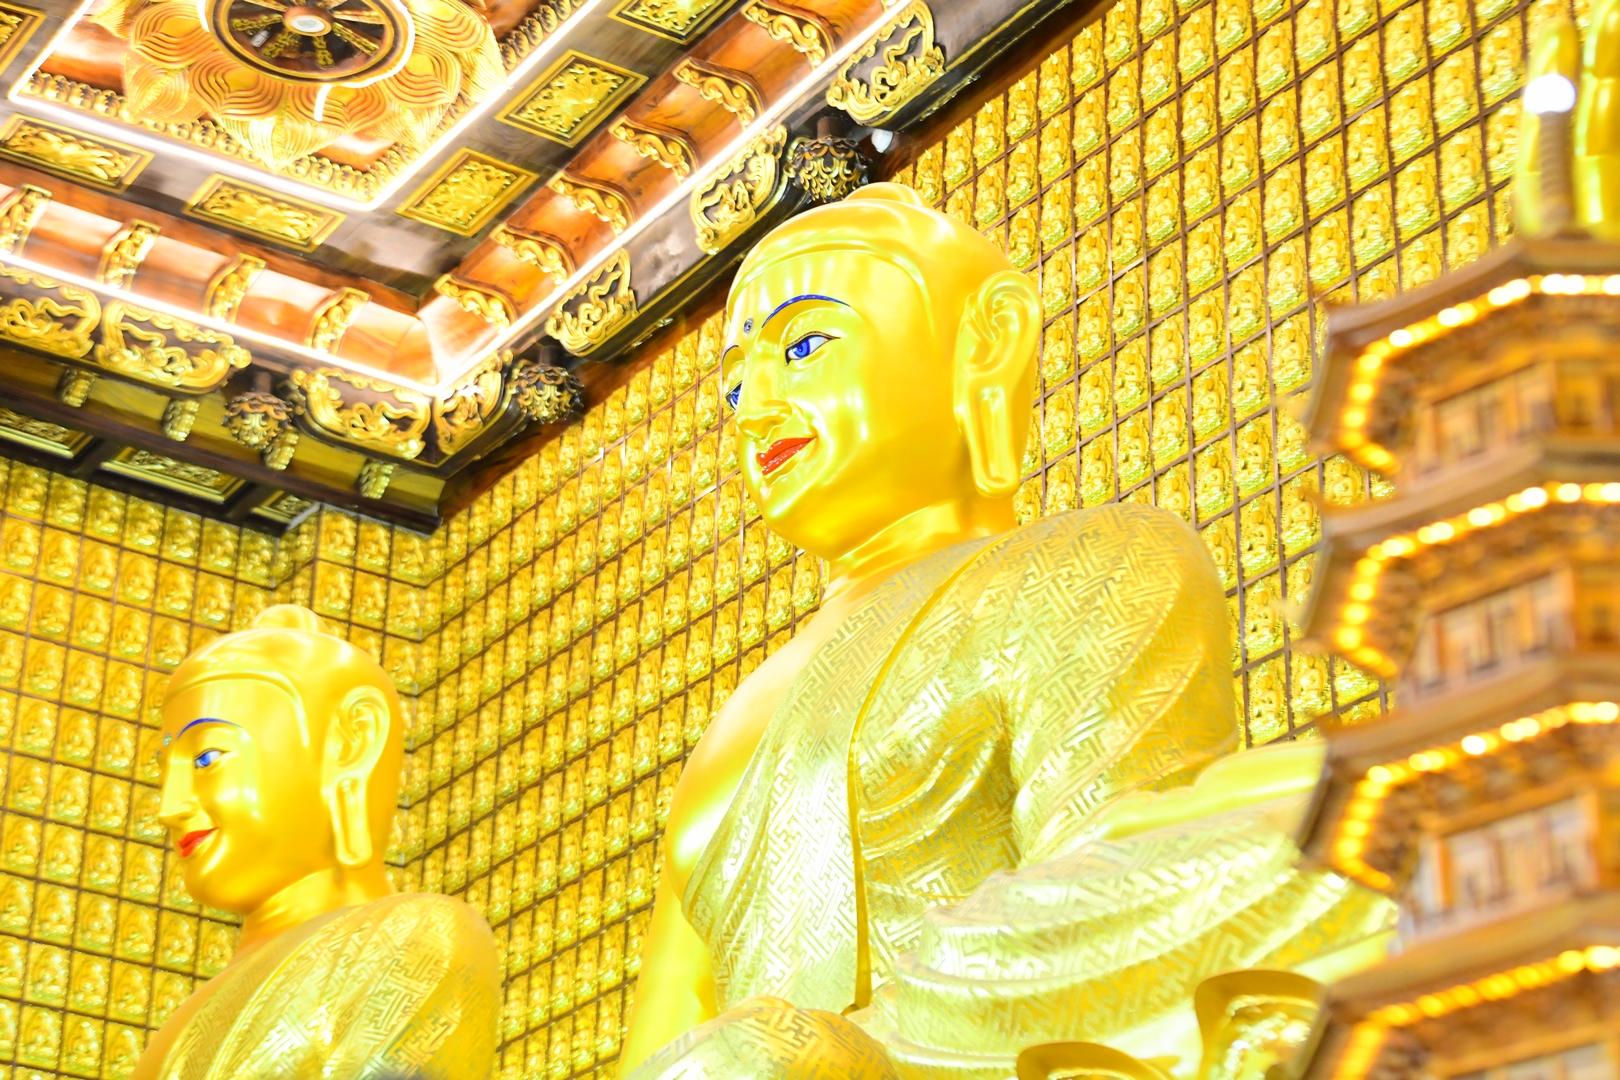 Lễ tưởng niệm Đức Phật nhập Niết bàn và kỷ niệm 56 năm ngày tiếp nối TT. Thích Nhật Từ